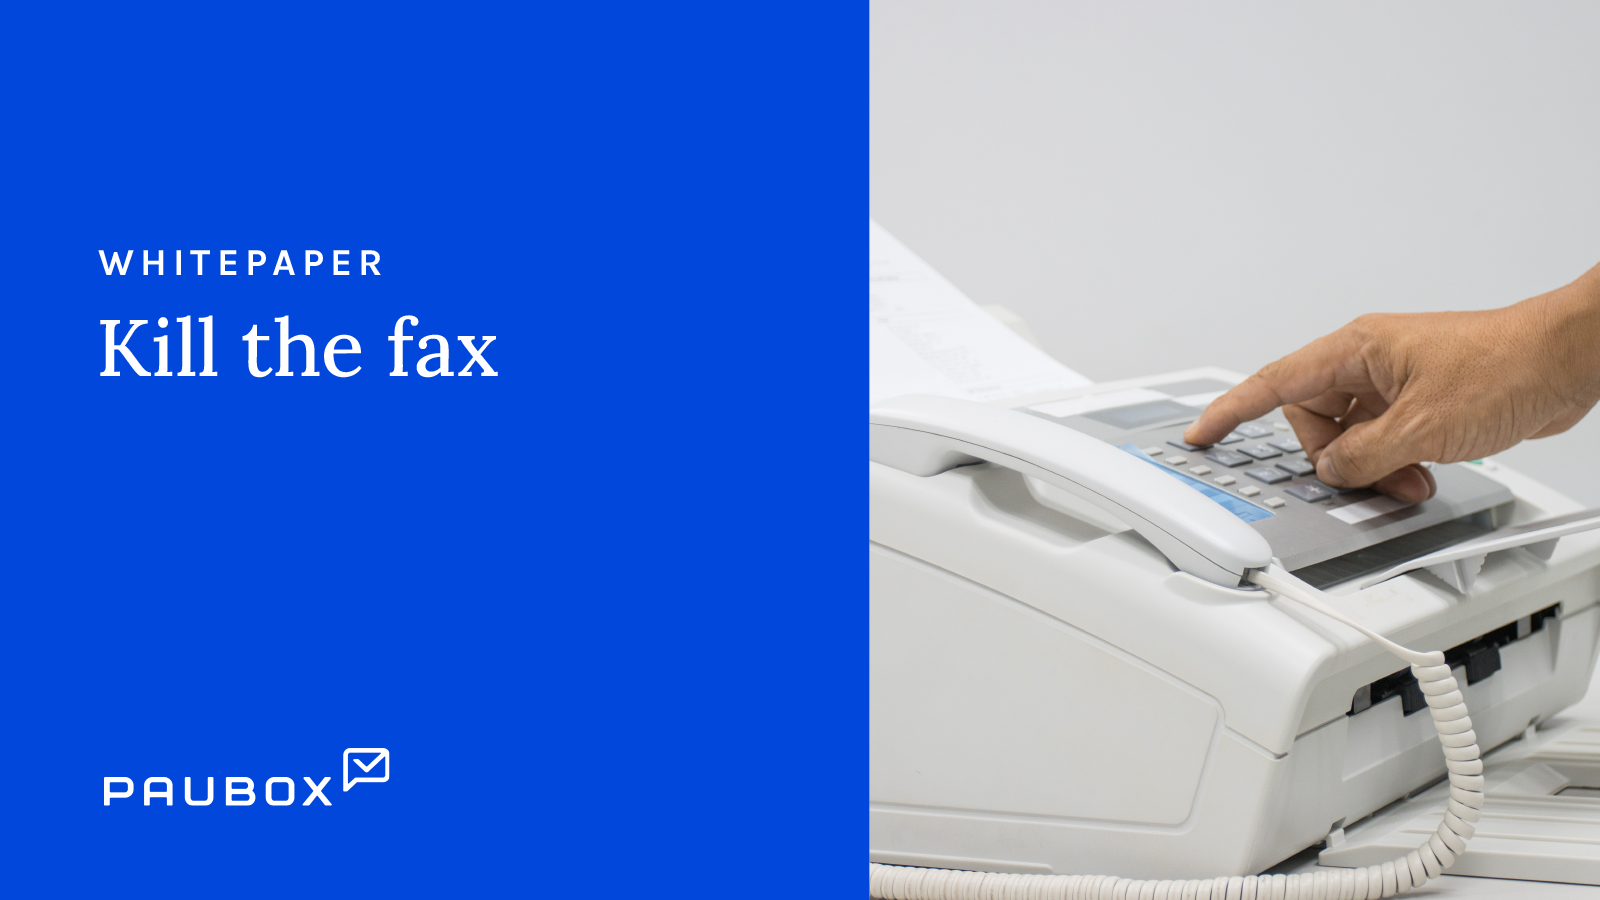 kill the fax guide